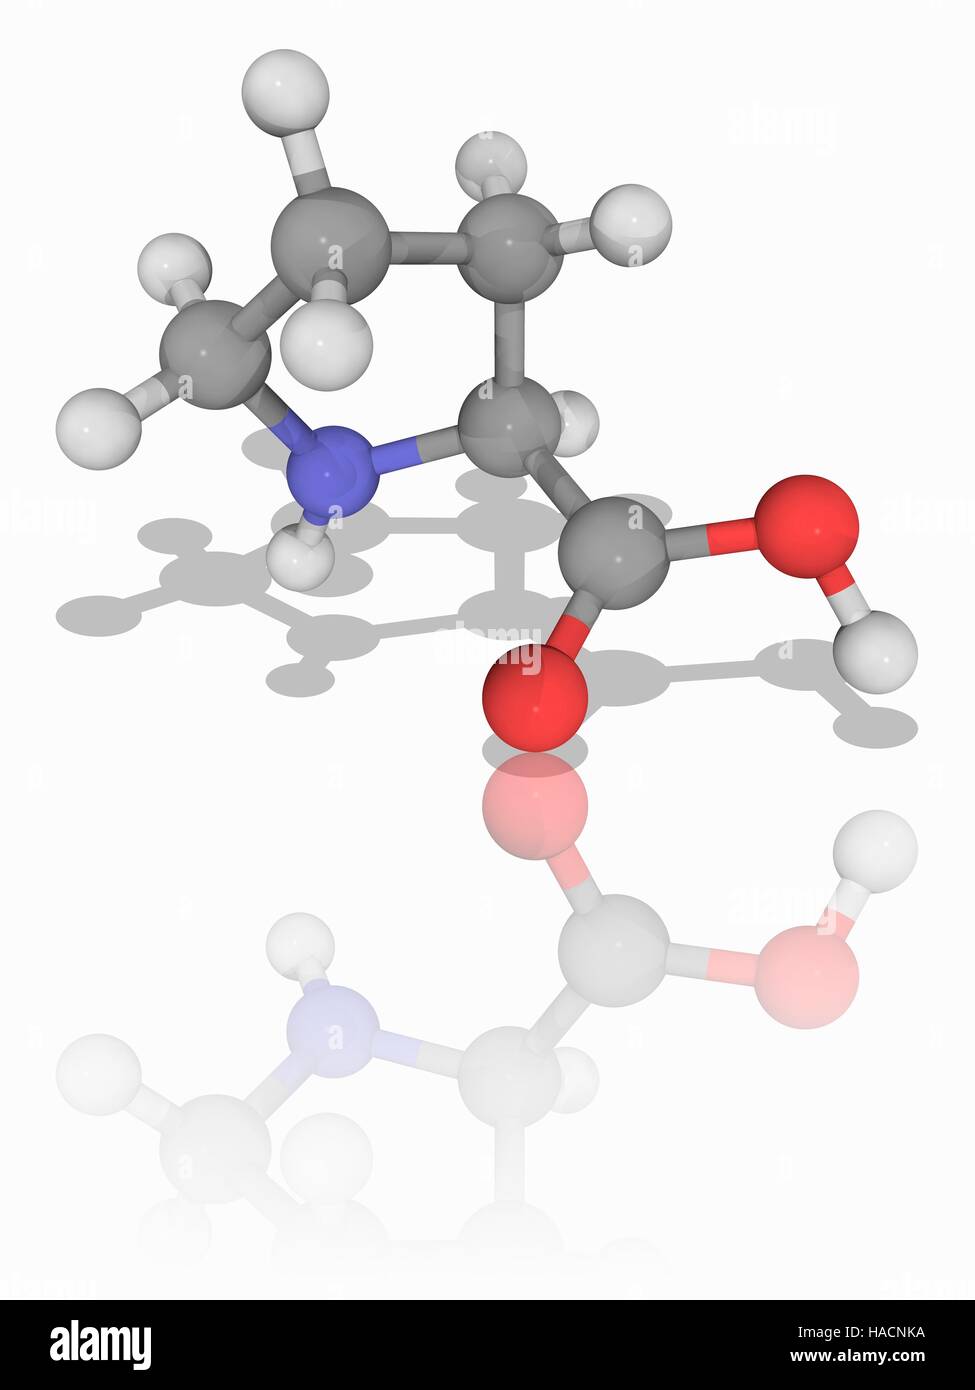 Prolin. Molekulares Modell des Alpha-amino Acid Proline unwesentliche (C5. H9. N.O2), eines der 20 DNA-kodierten Aminosäuren. Atome als Kugeln dargestellt werden und sind farblich gekennzeichnet: Kohlenstoff (grau), Wasserstoff (weiß), Stickstoff (blau) und Sauerstoff (rot). Abbildung. Stockfoto